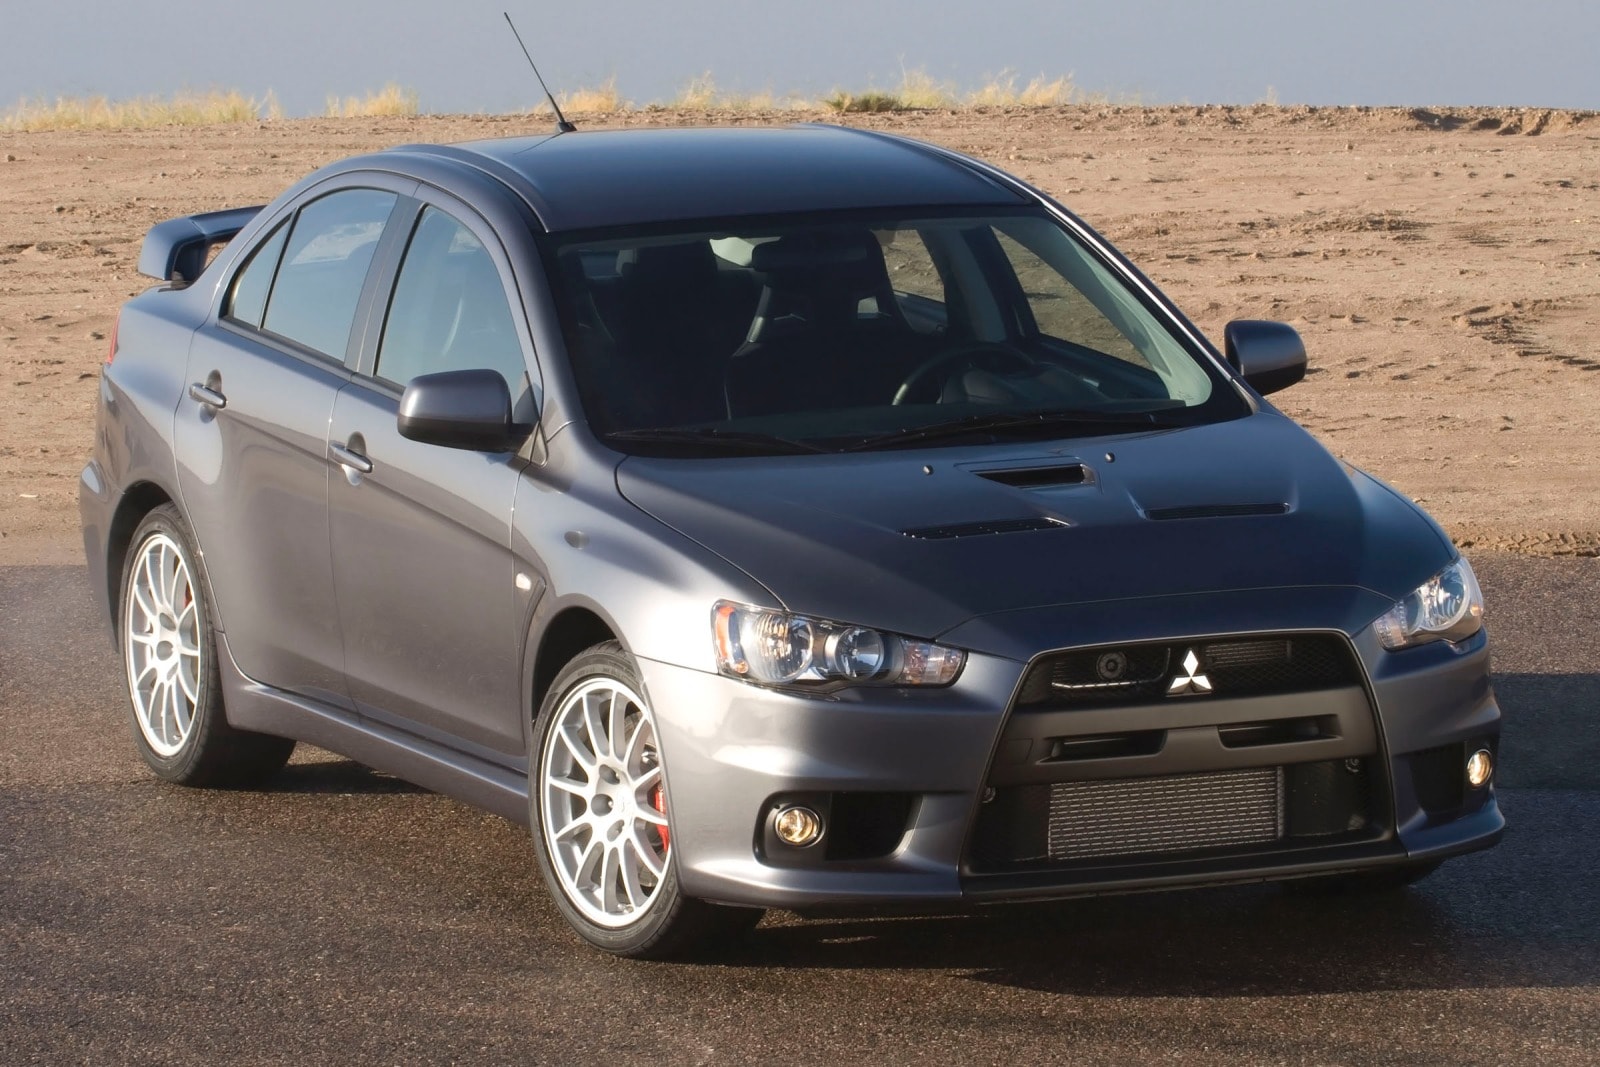 2014 Mitsubishi Lancer Evolution Review & Ratings | Edmunds